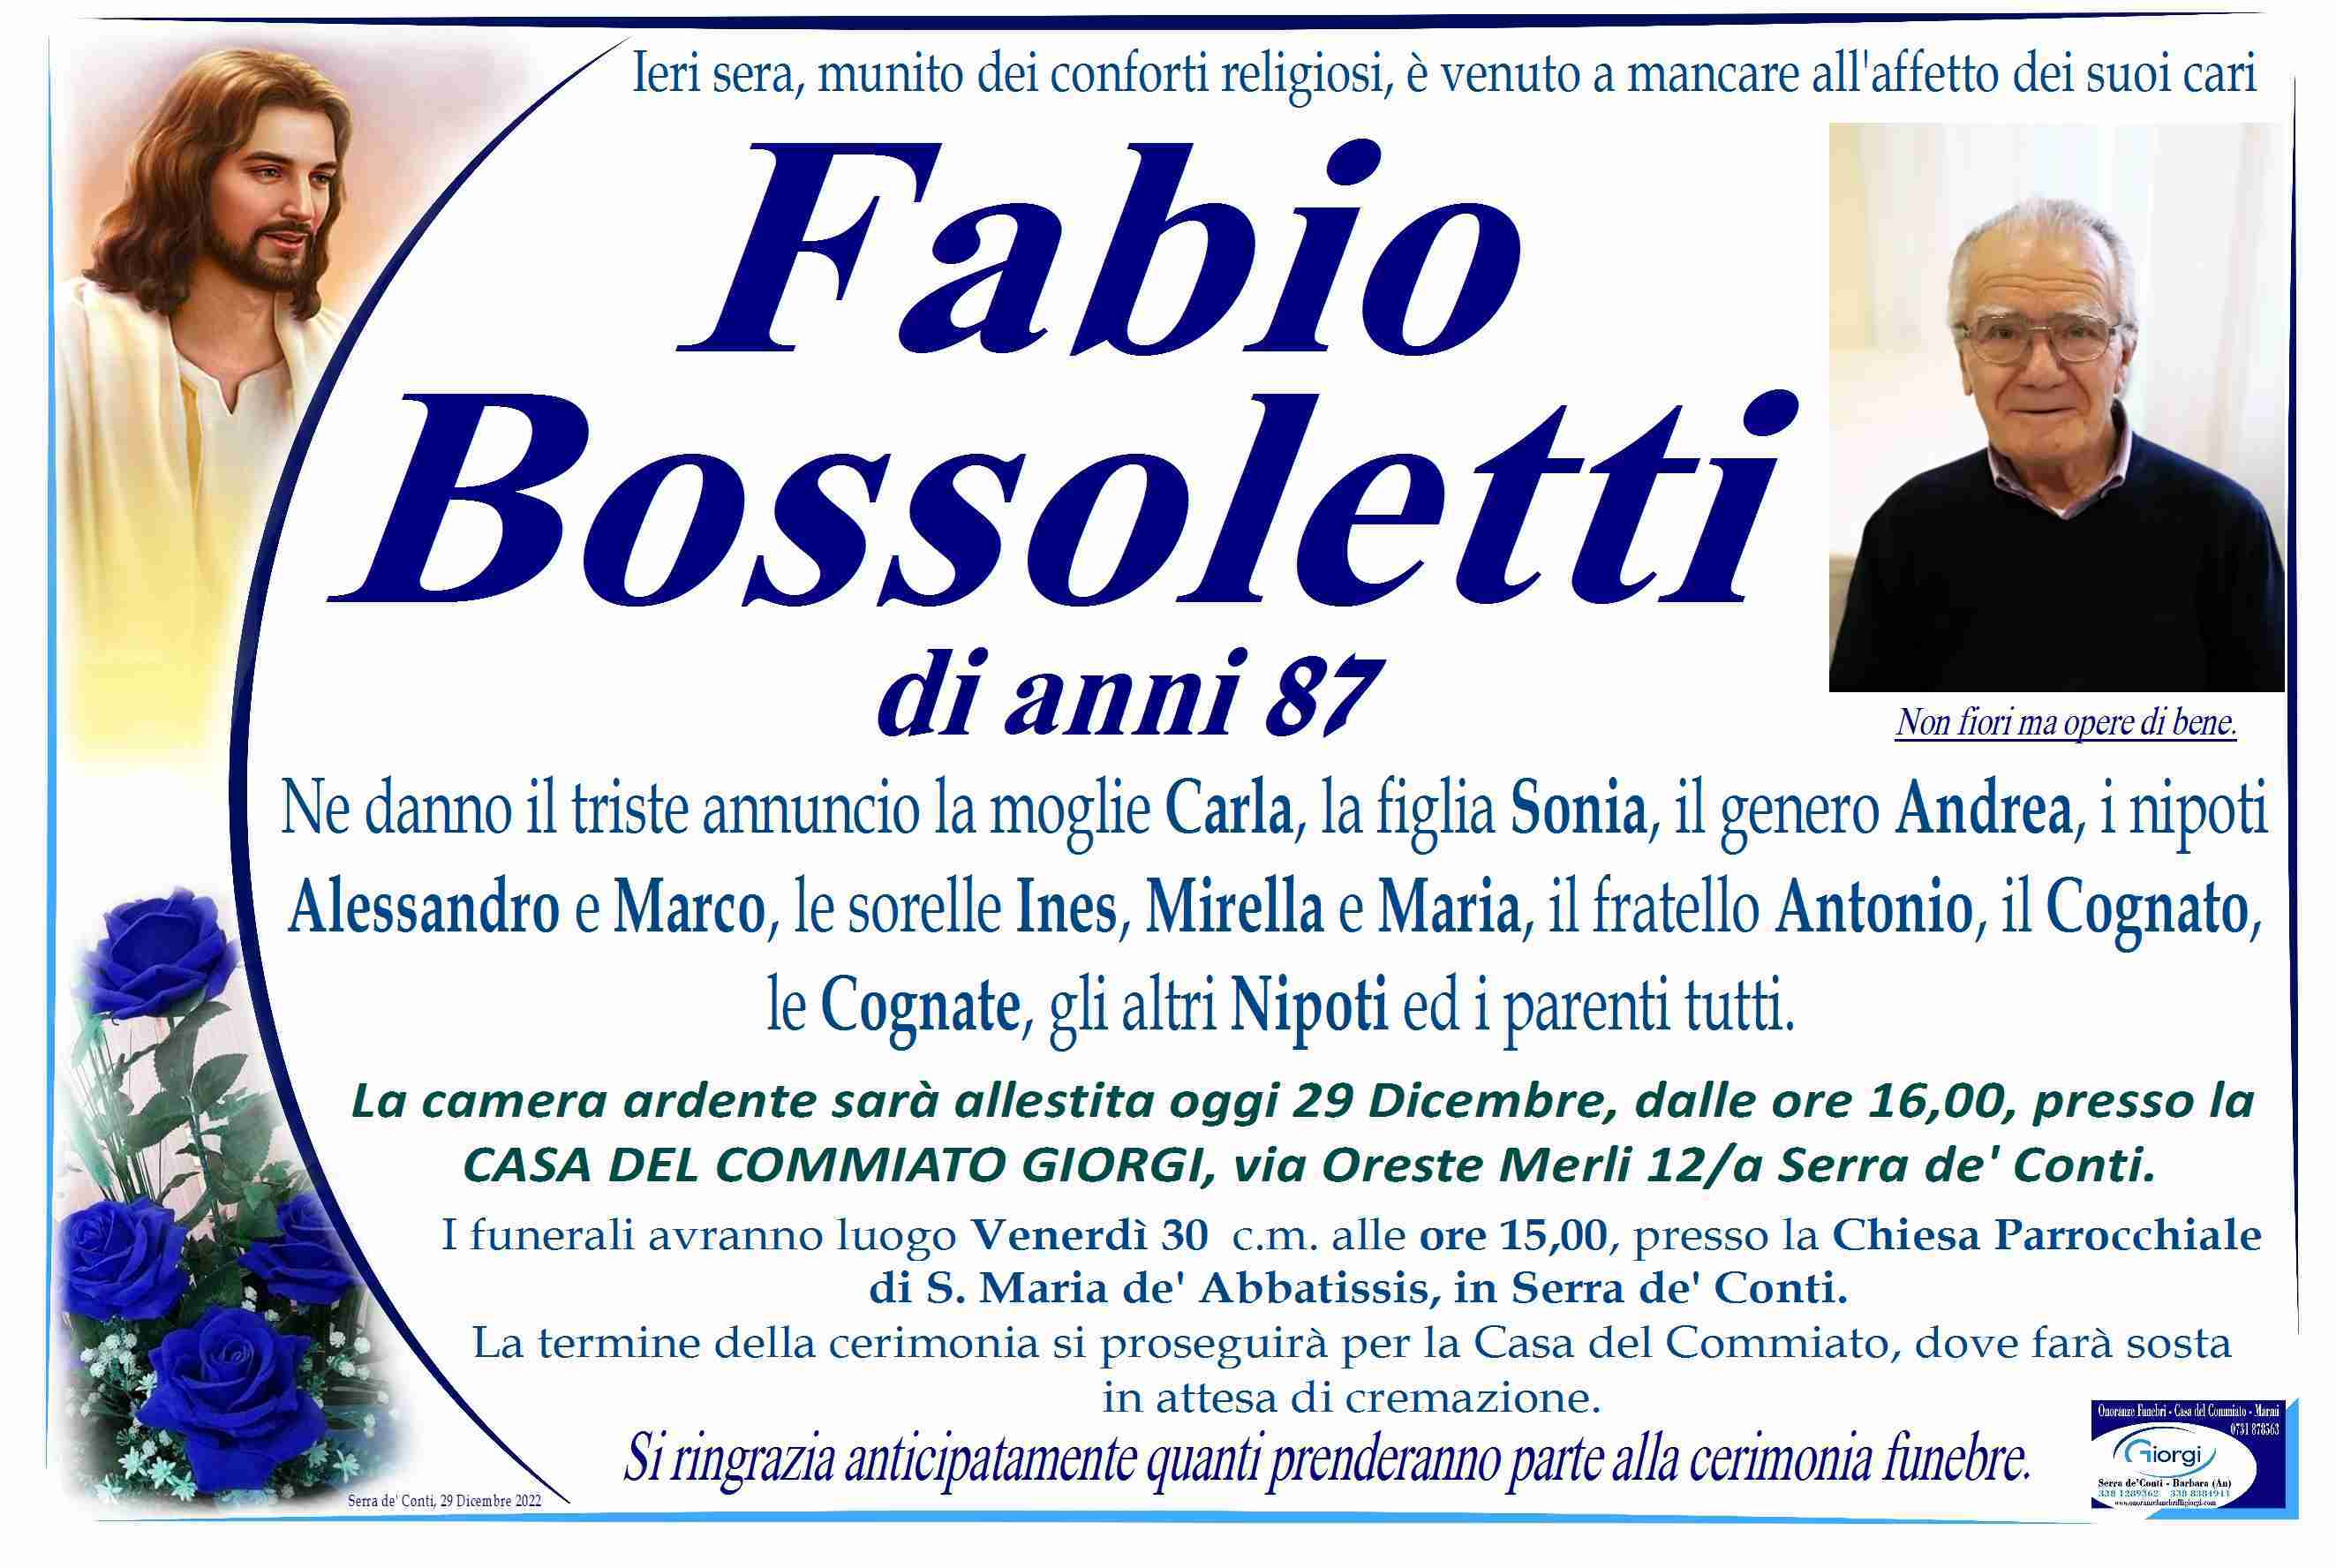 Fabio Bossoletti